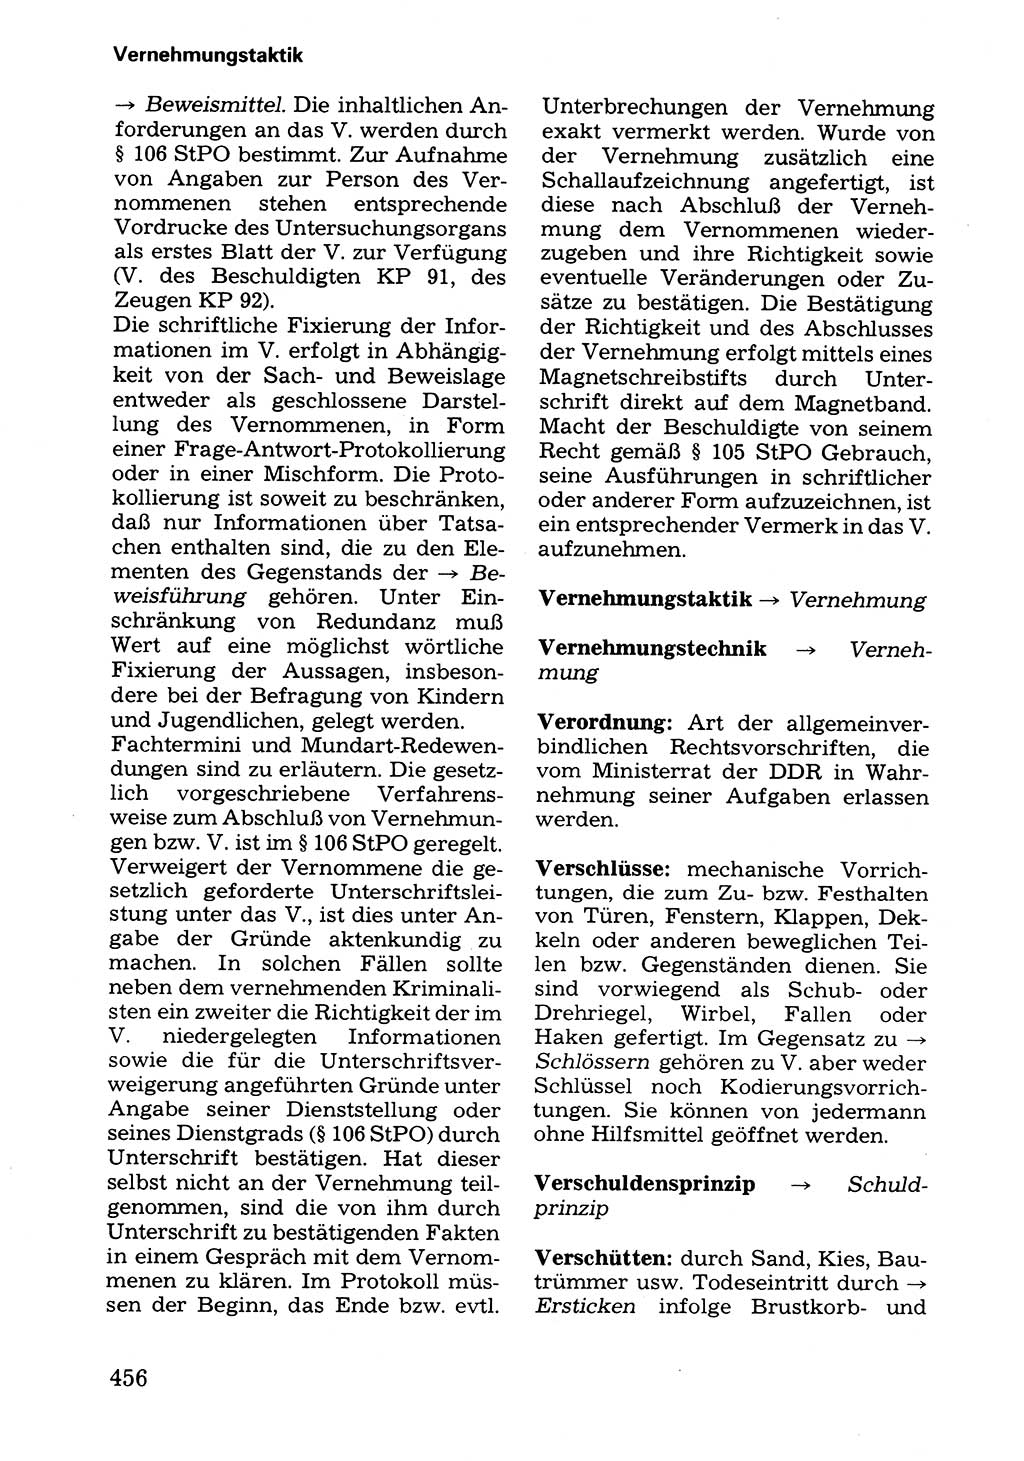 Wörterbuch der sozialistischen Kriminalistik [Deutsche Demokratische Republik (DDR)] 1981, Seite 456 (Wb. soz. Krim. DDR 1981, S. 456)